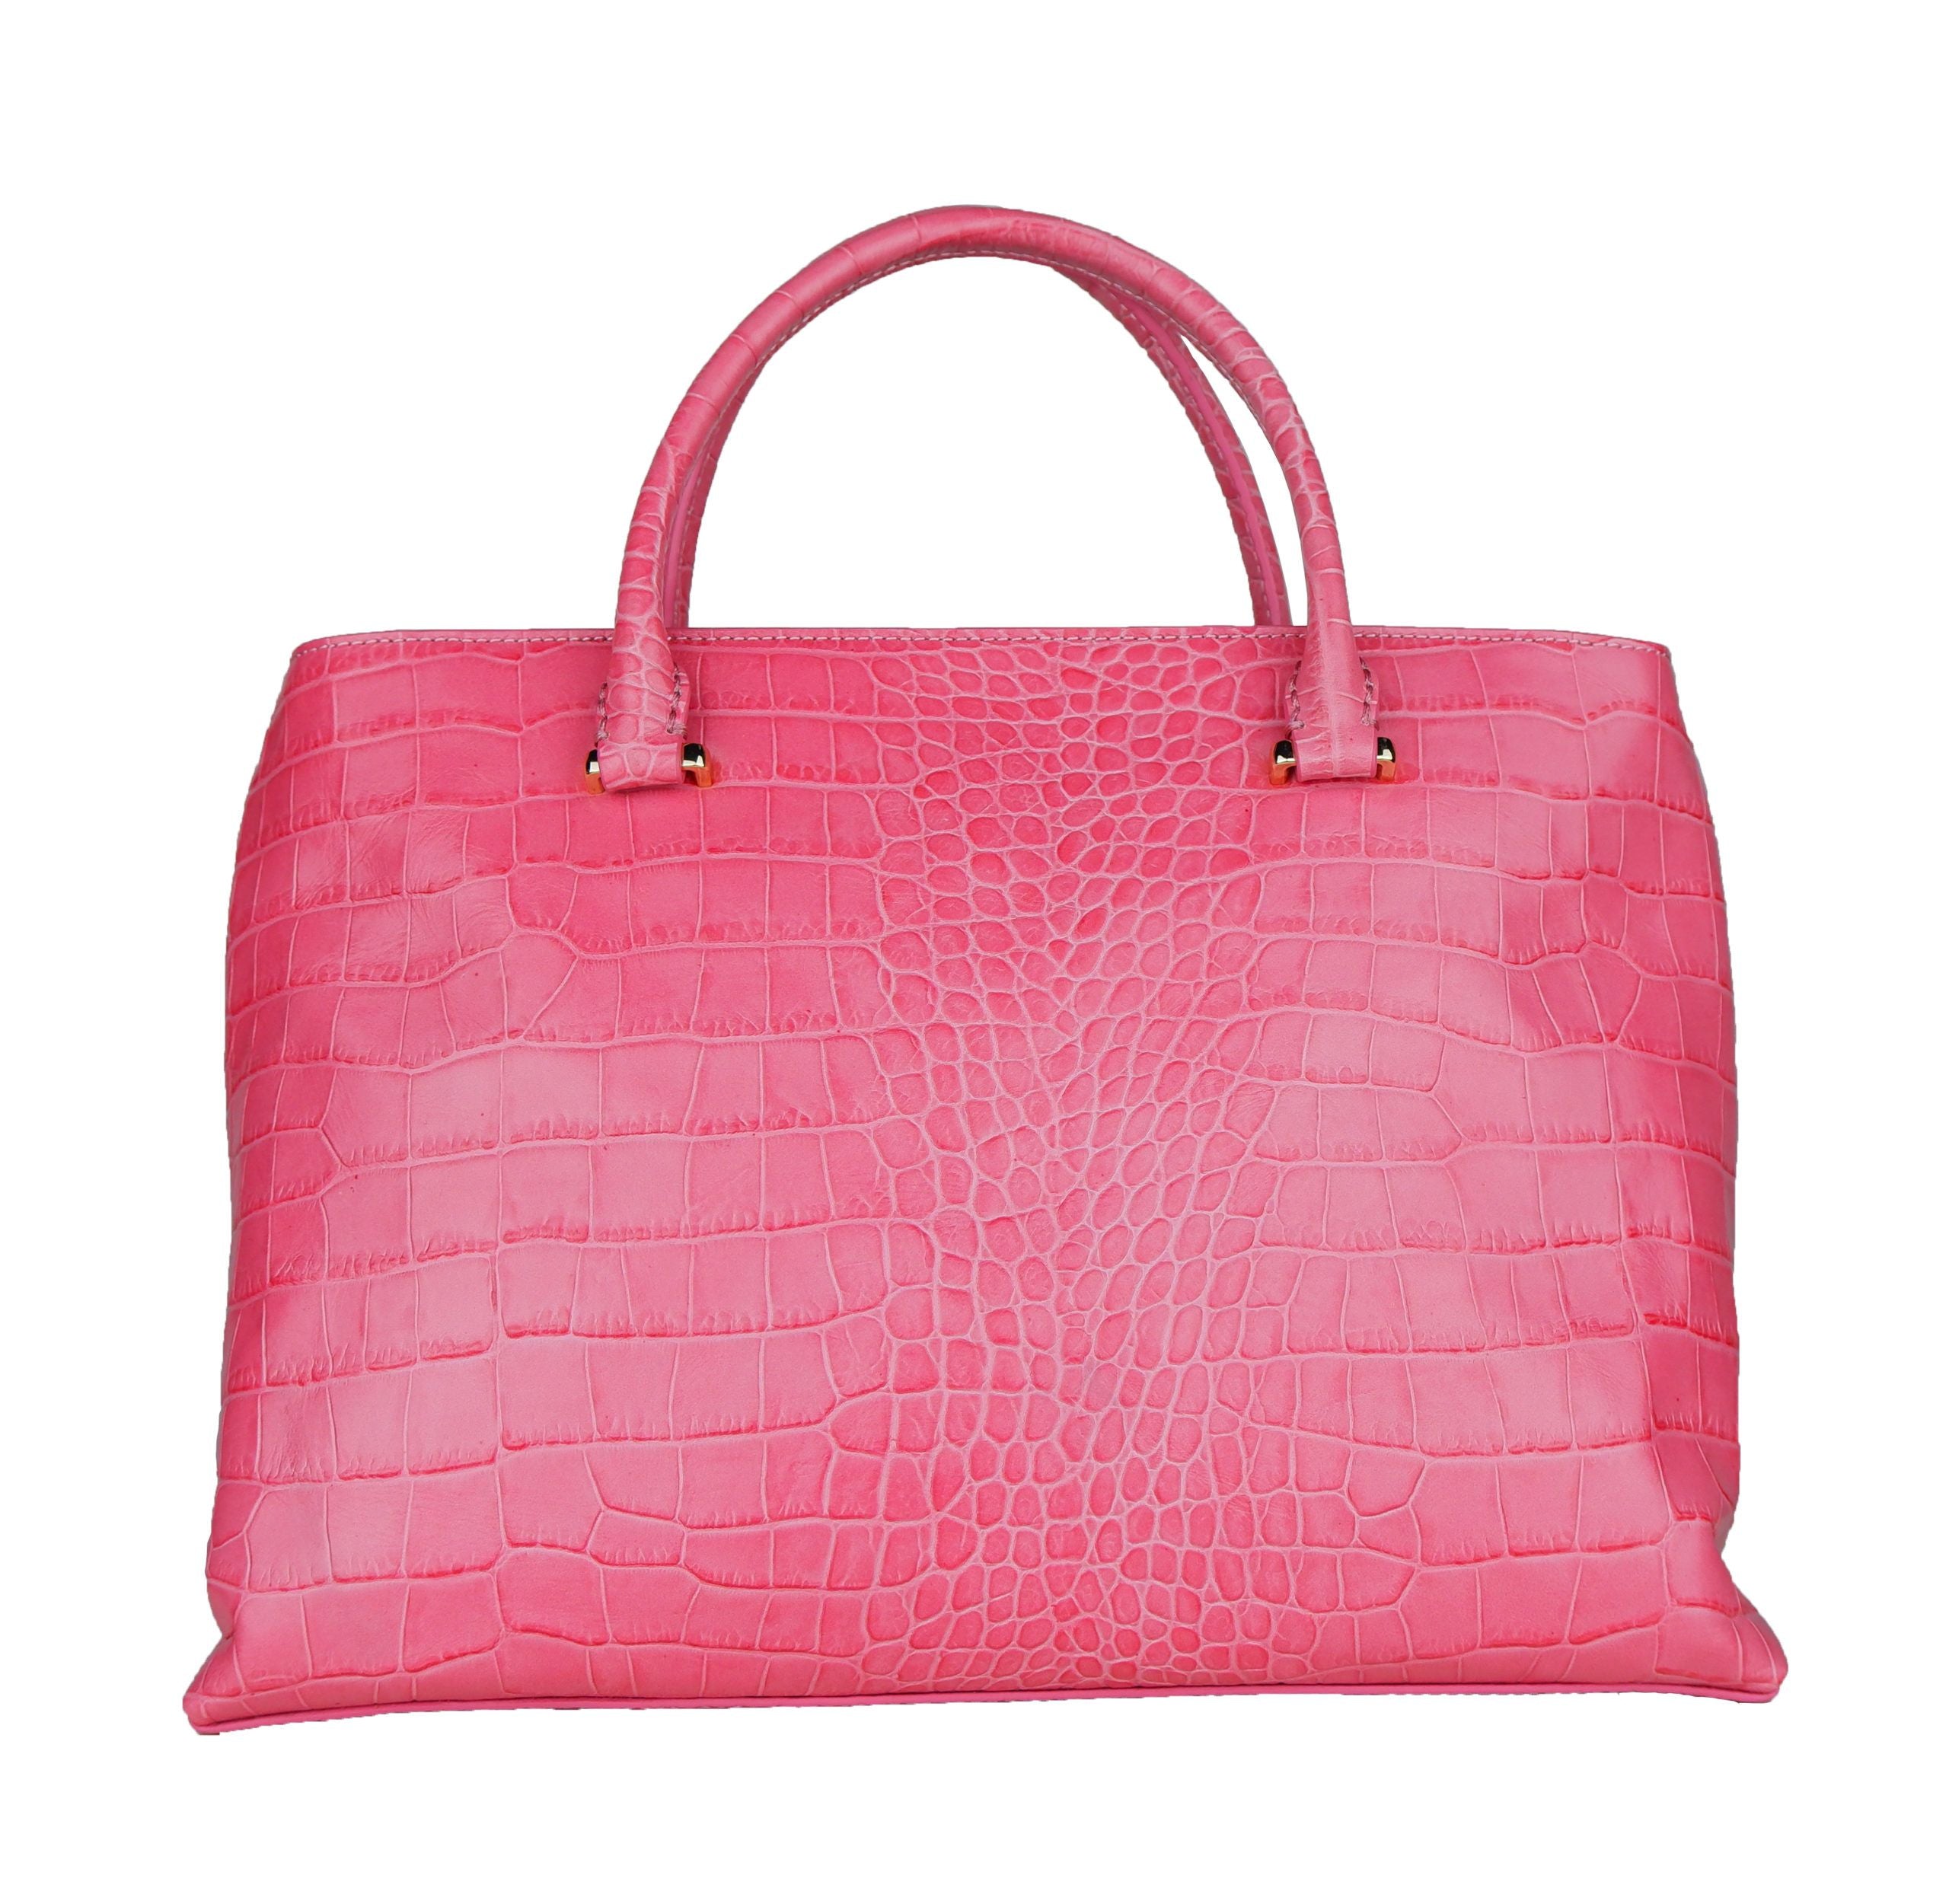 Cavalli Class Pink Calfskin Handbag